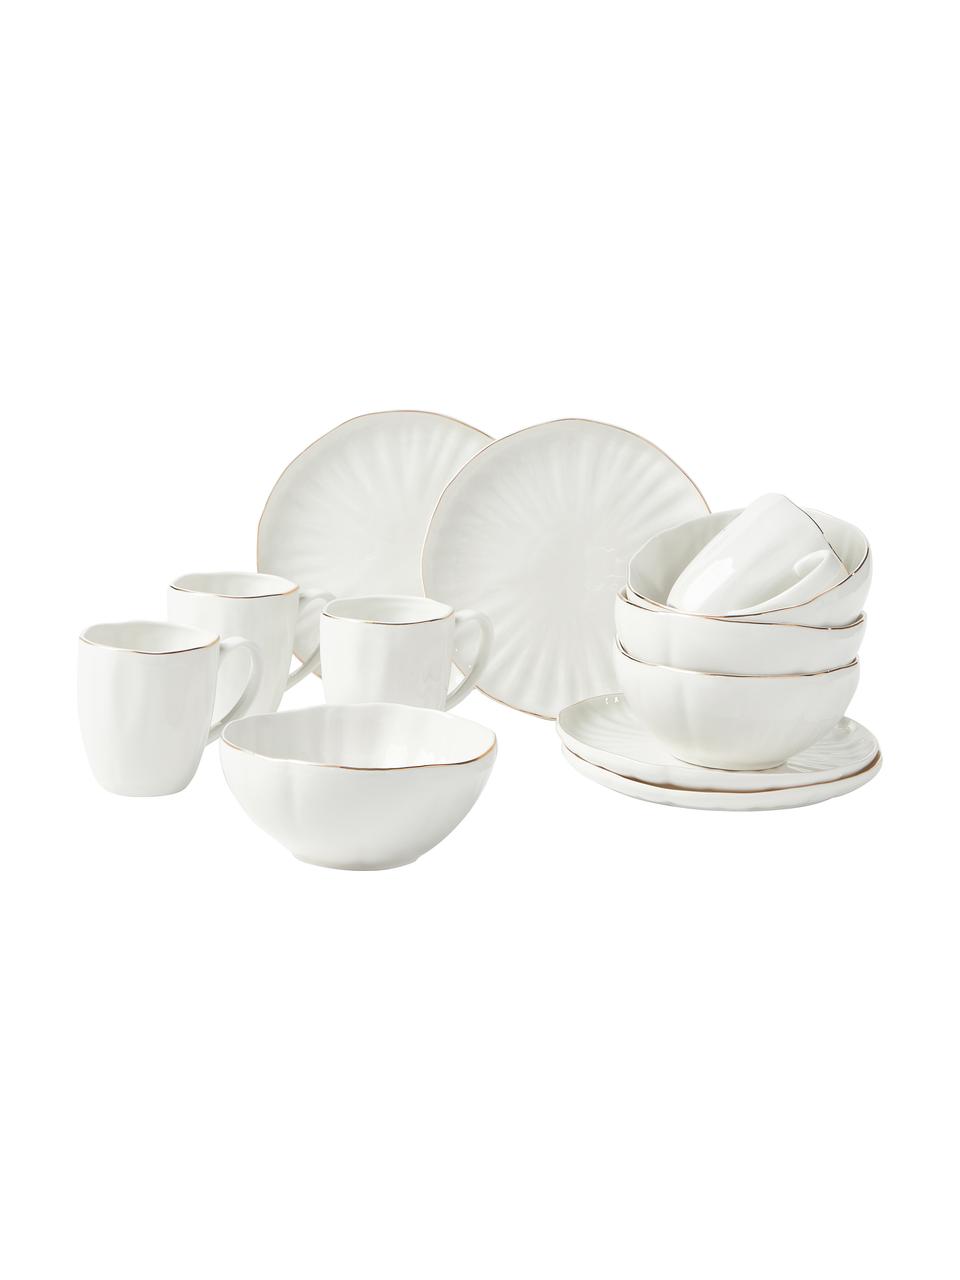 Sada porcelánového snídaňového nádobí s reliéfem Sali, pro 4 osoby (12 dílů), Porcelán, Bílá se zlatým okrajem, Pro 4 osoby (12 dílů)